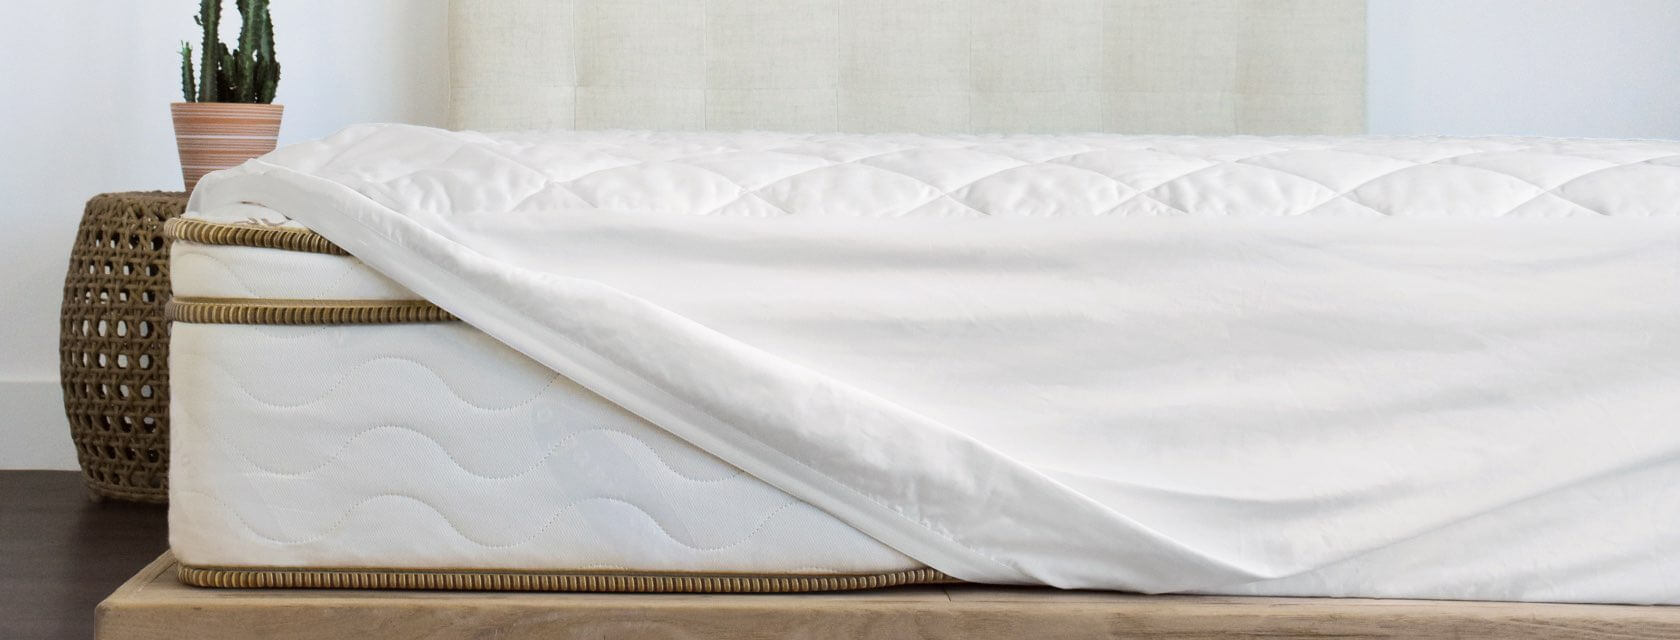 best sheets for saatva mattress